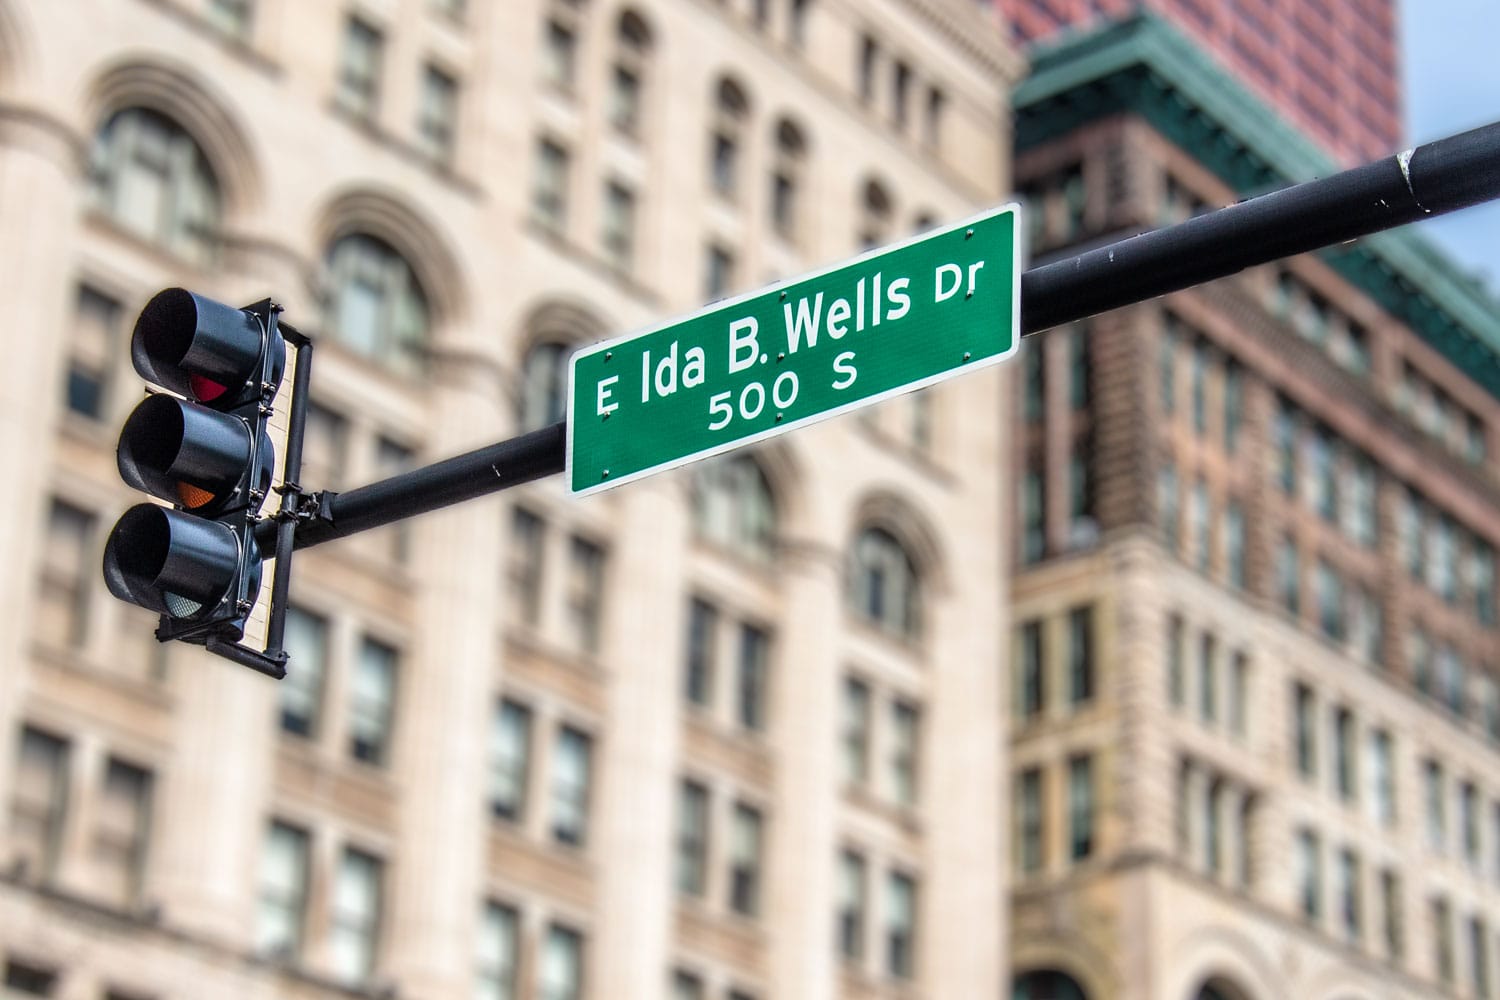 Ida B. Wells Drive street sign